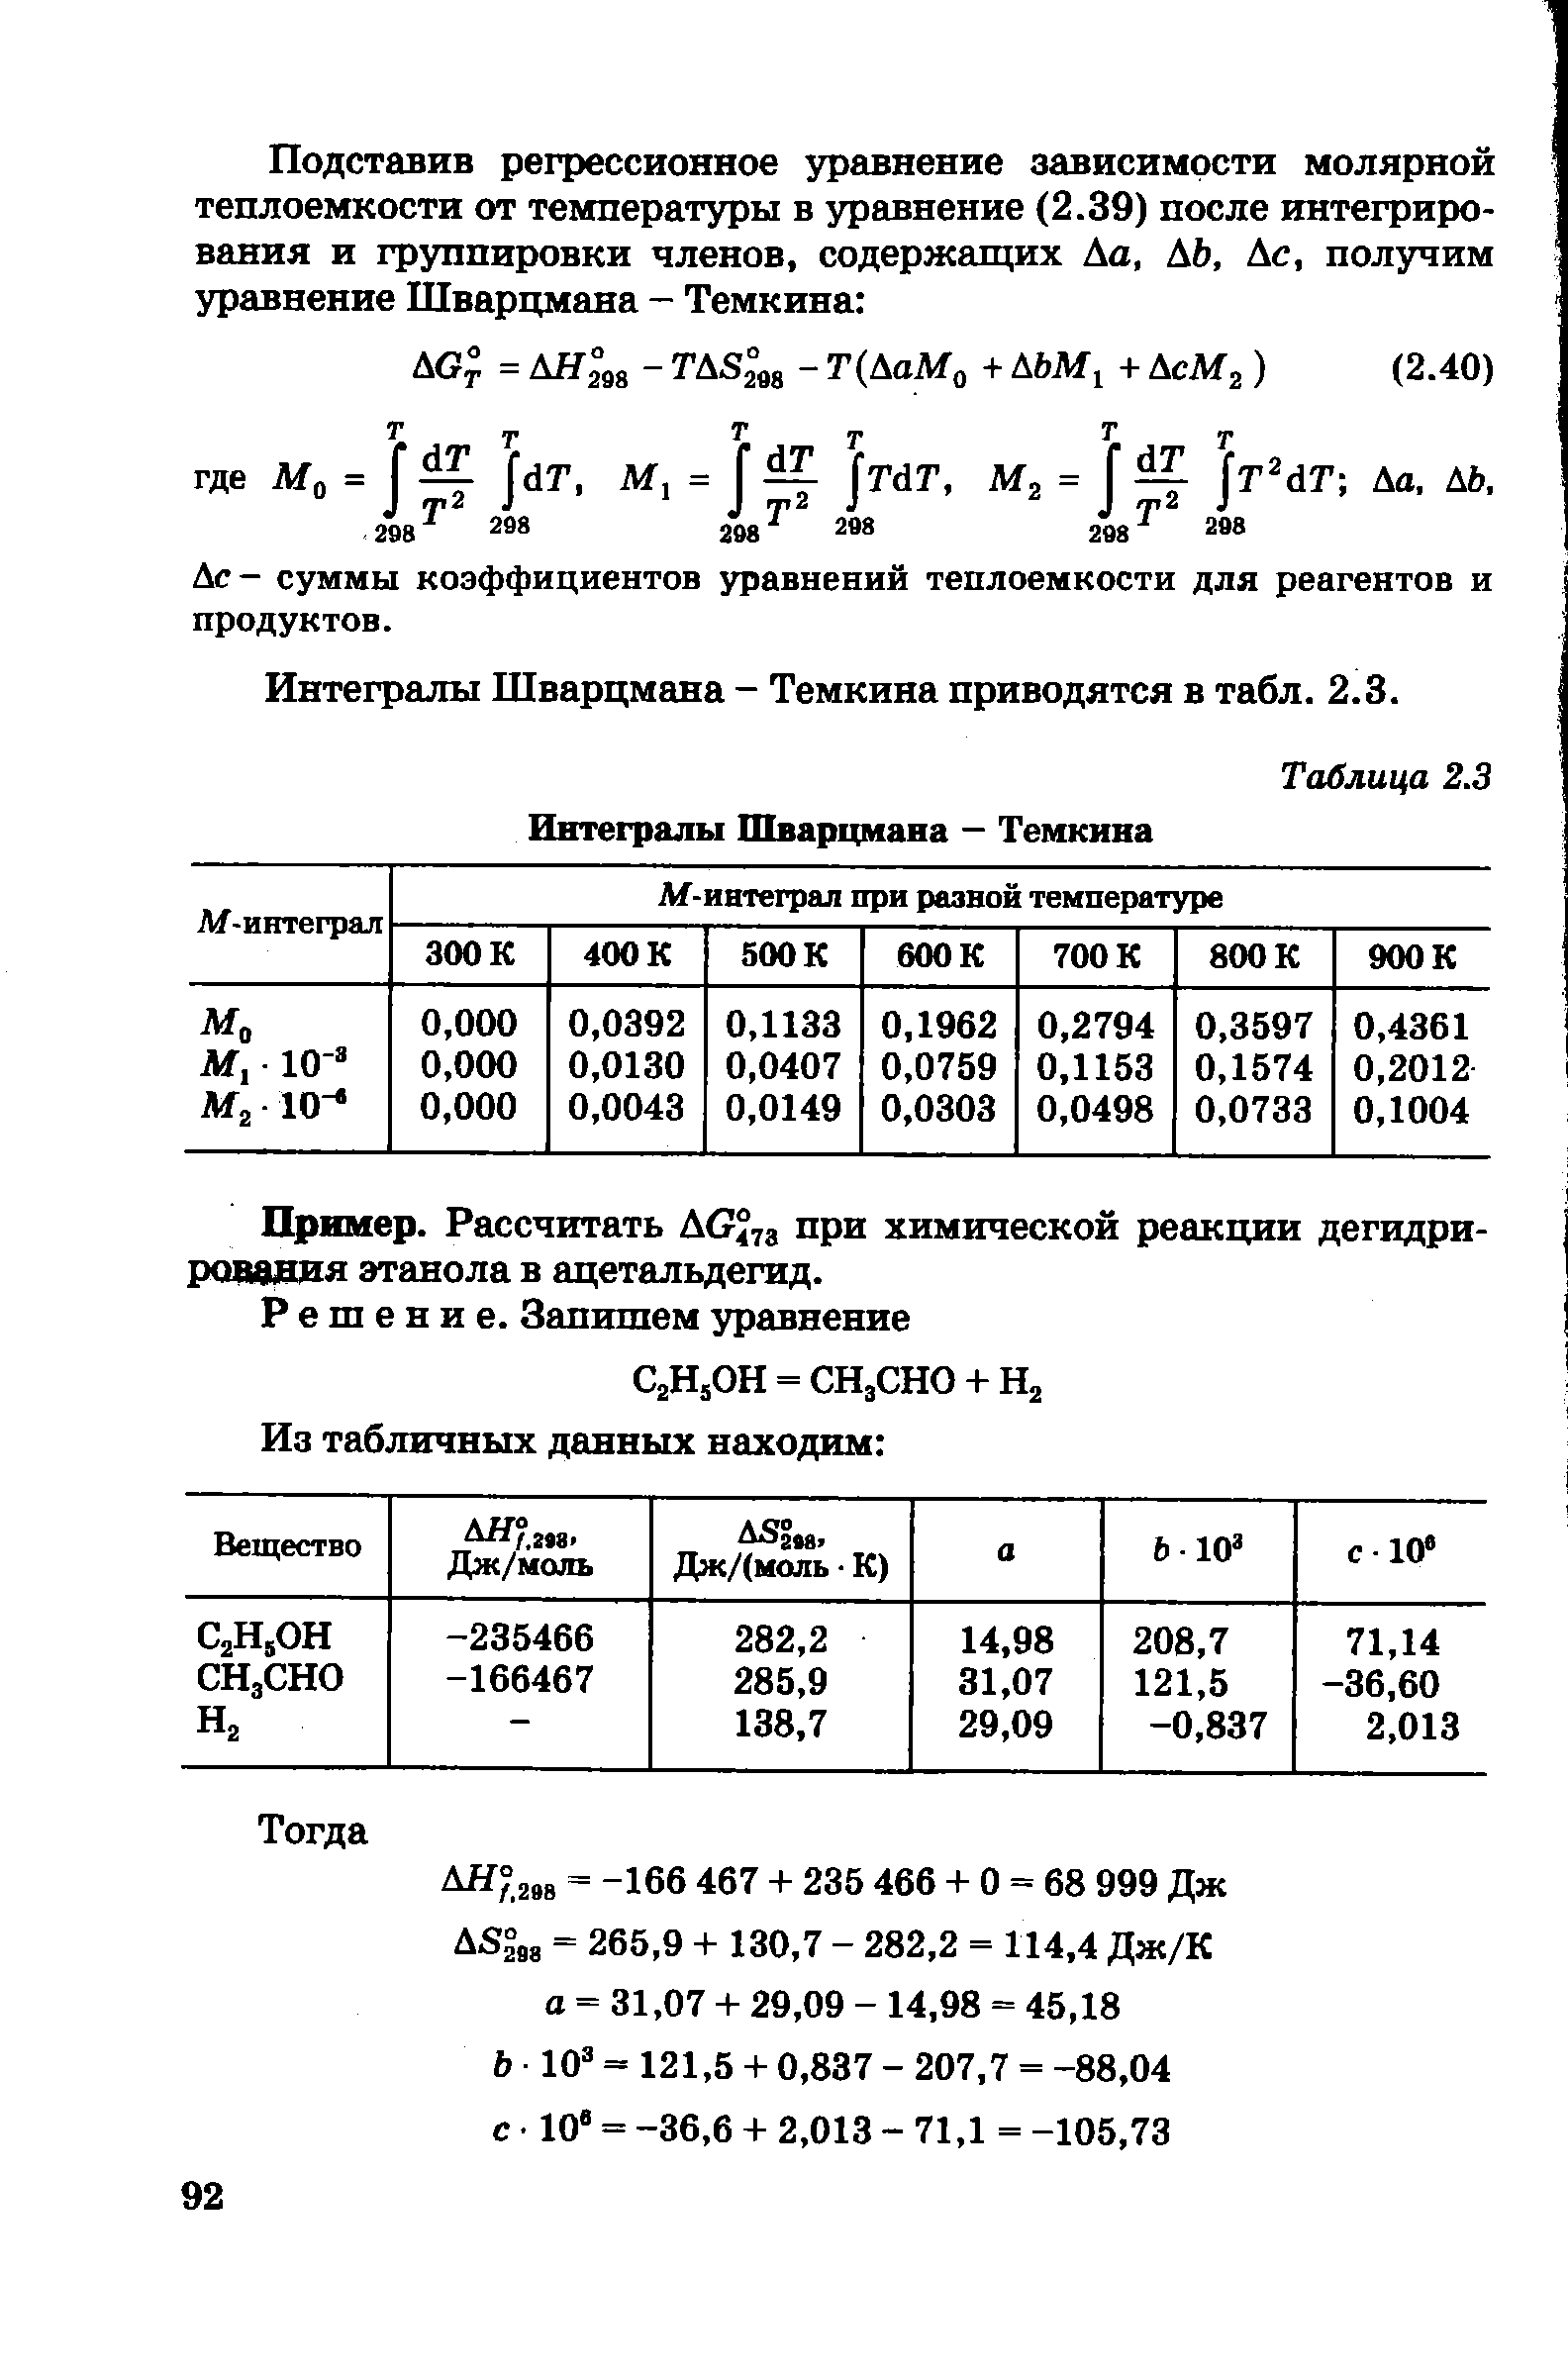 Дс - суммы коэффициентов уравнений теплоемкости для реагентов и продуктов.